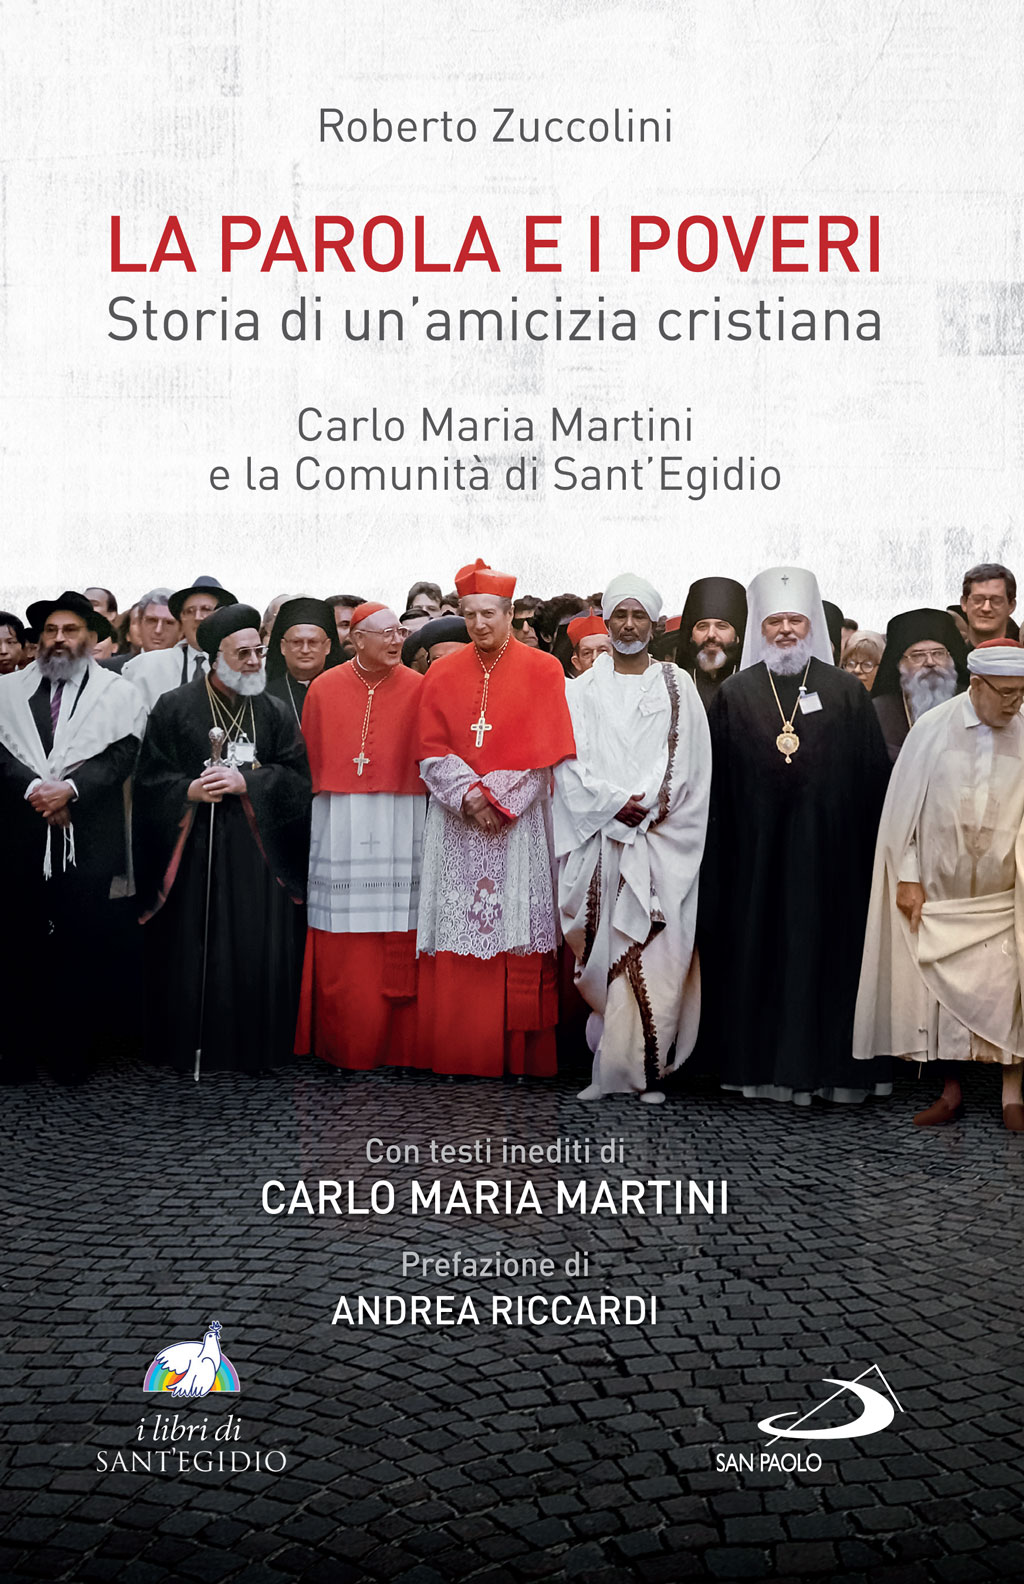 Carlo Maria Martini e Sant'Egidio: amicizia per i poveri